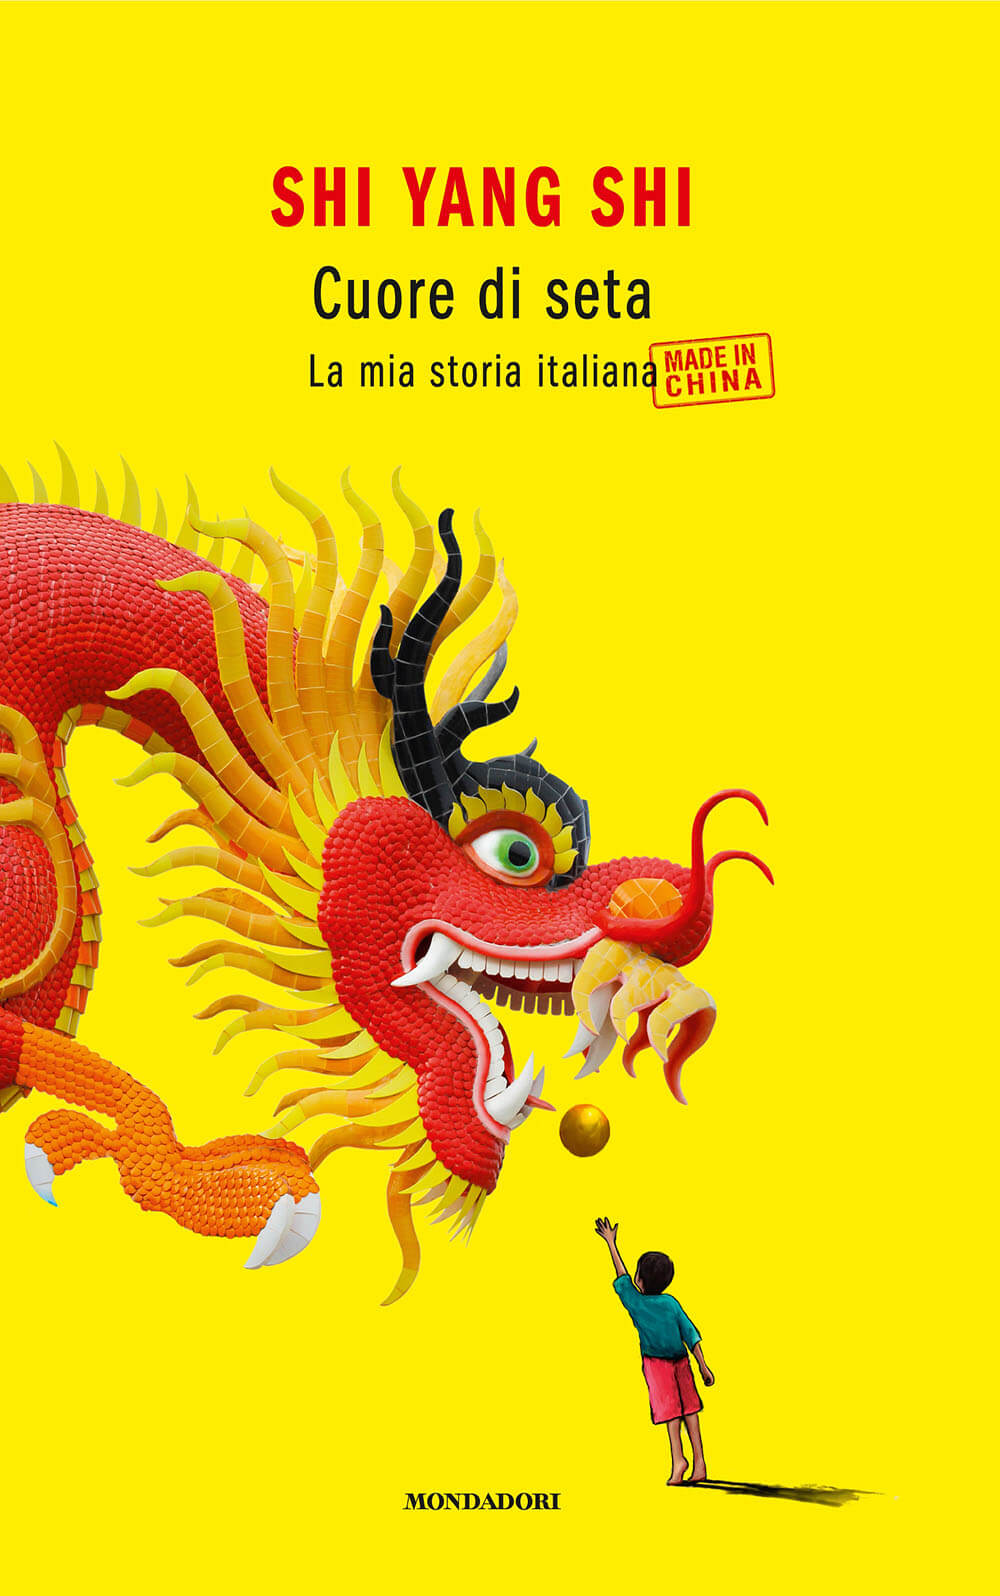 Yang Shi: "La mia strana storia gay, made in China" - cuore di seta shi yang shi - Gay.it